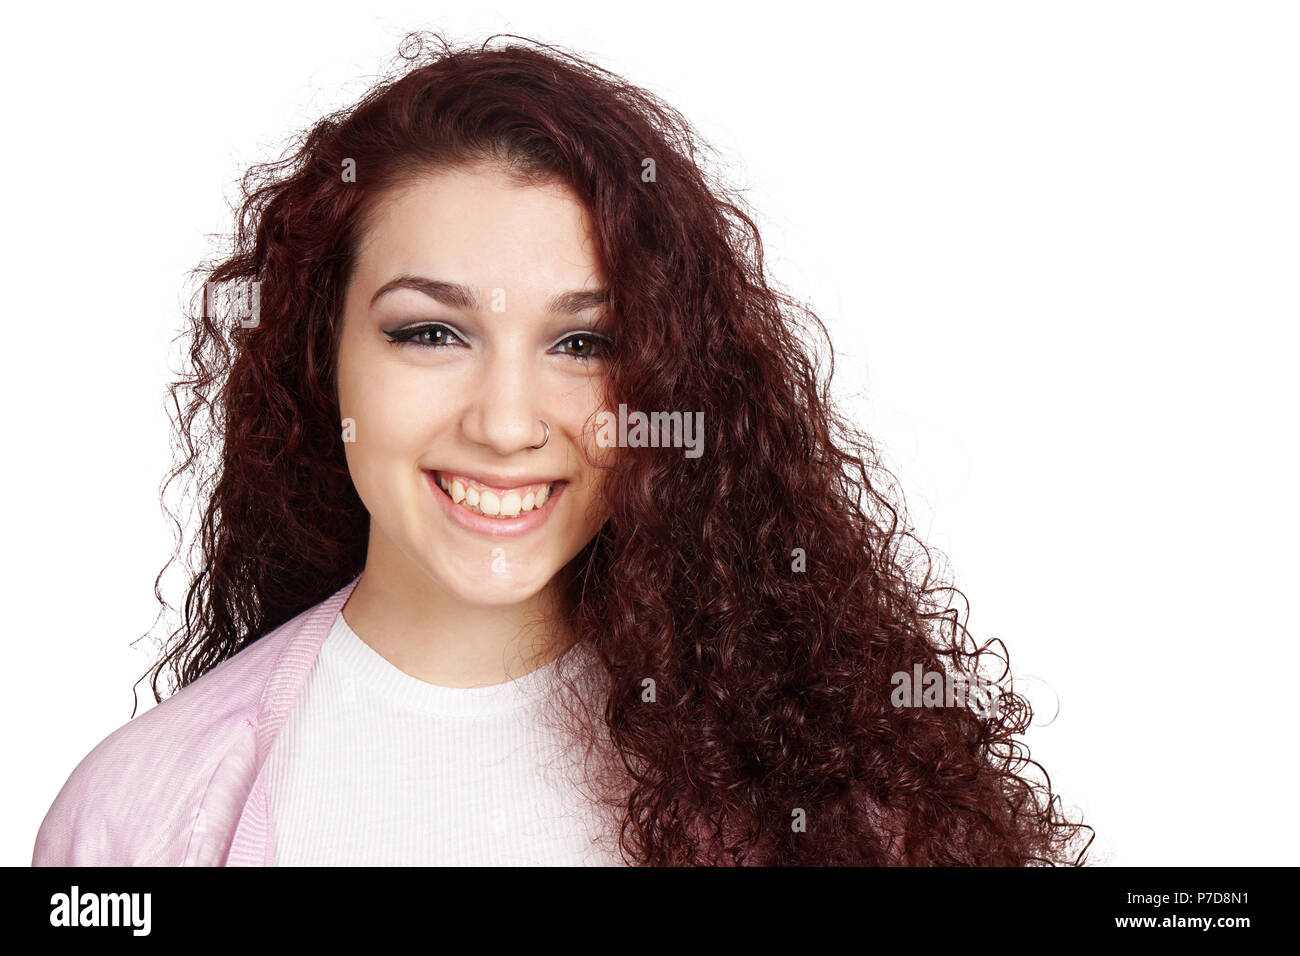 Felice ragazza adolescente con lunghi capelli ricci e sorriso toothy isolato su bianco Foto Stock